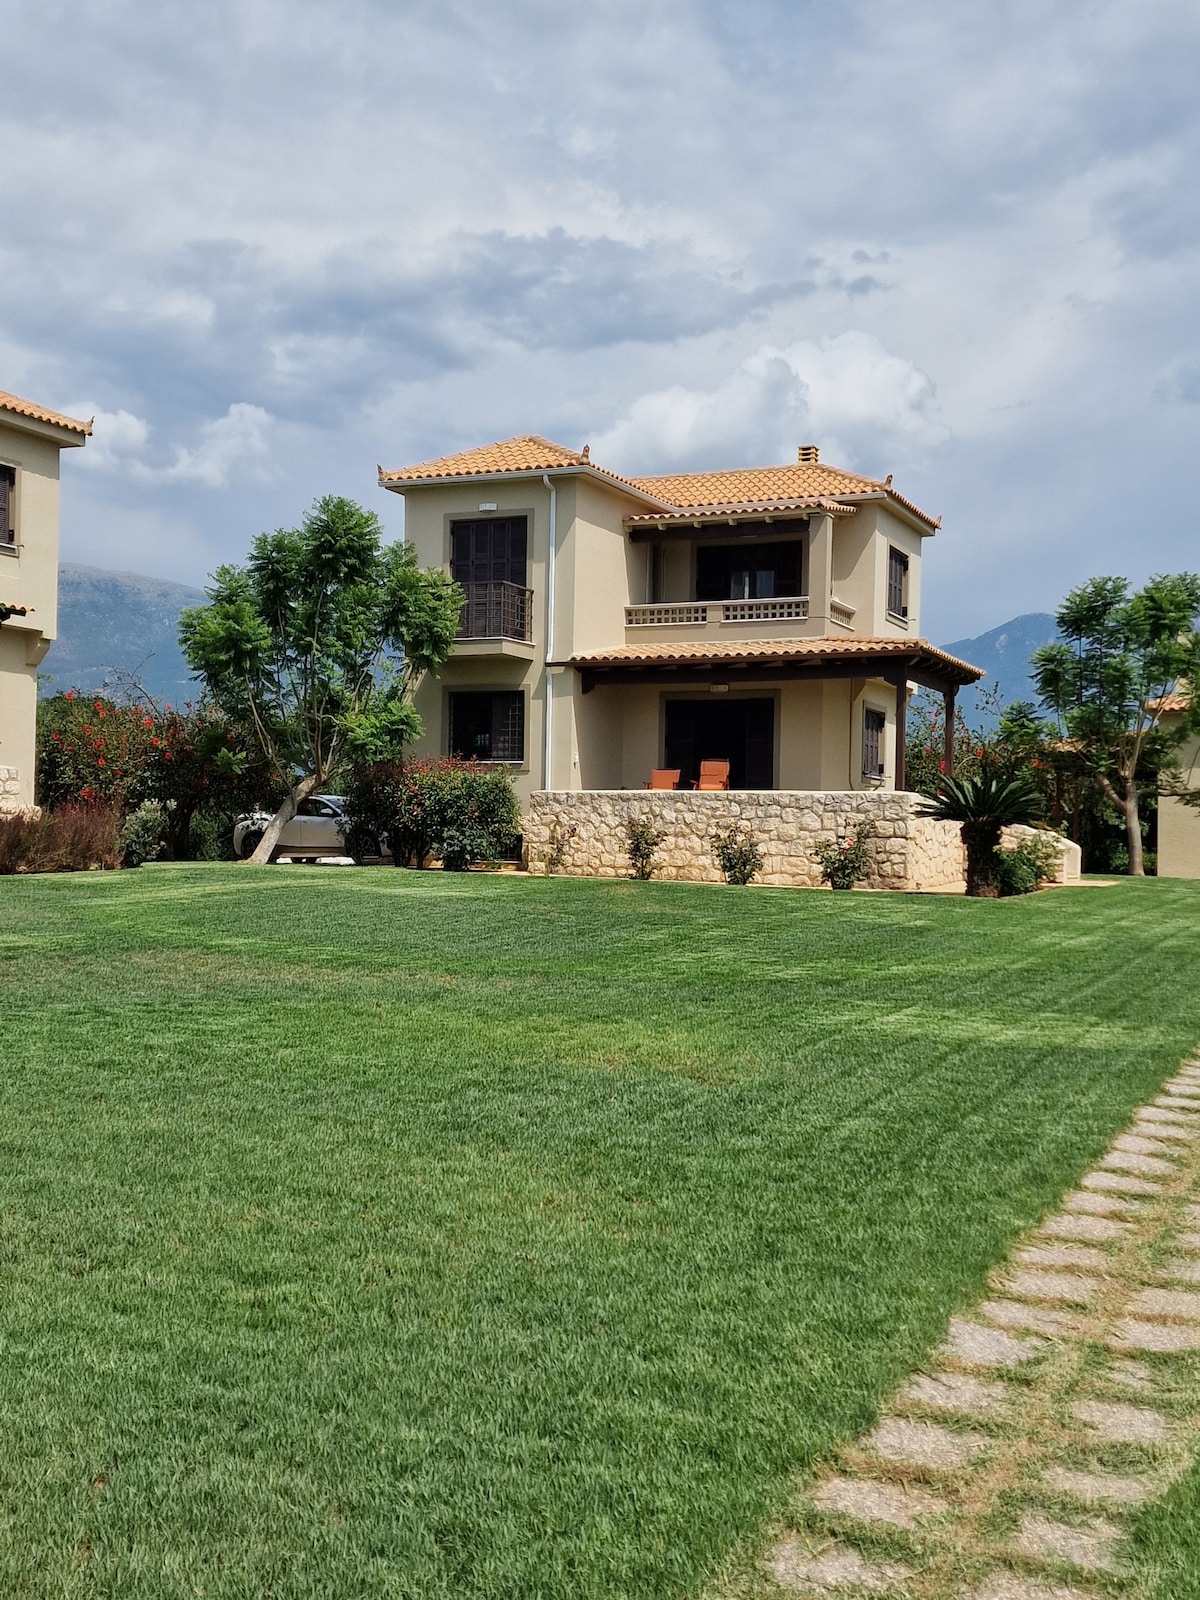 Messinian Villa